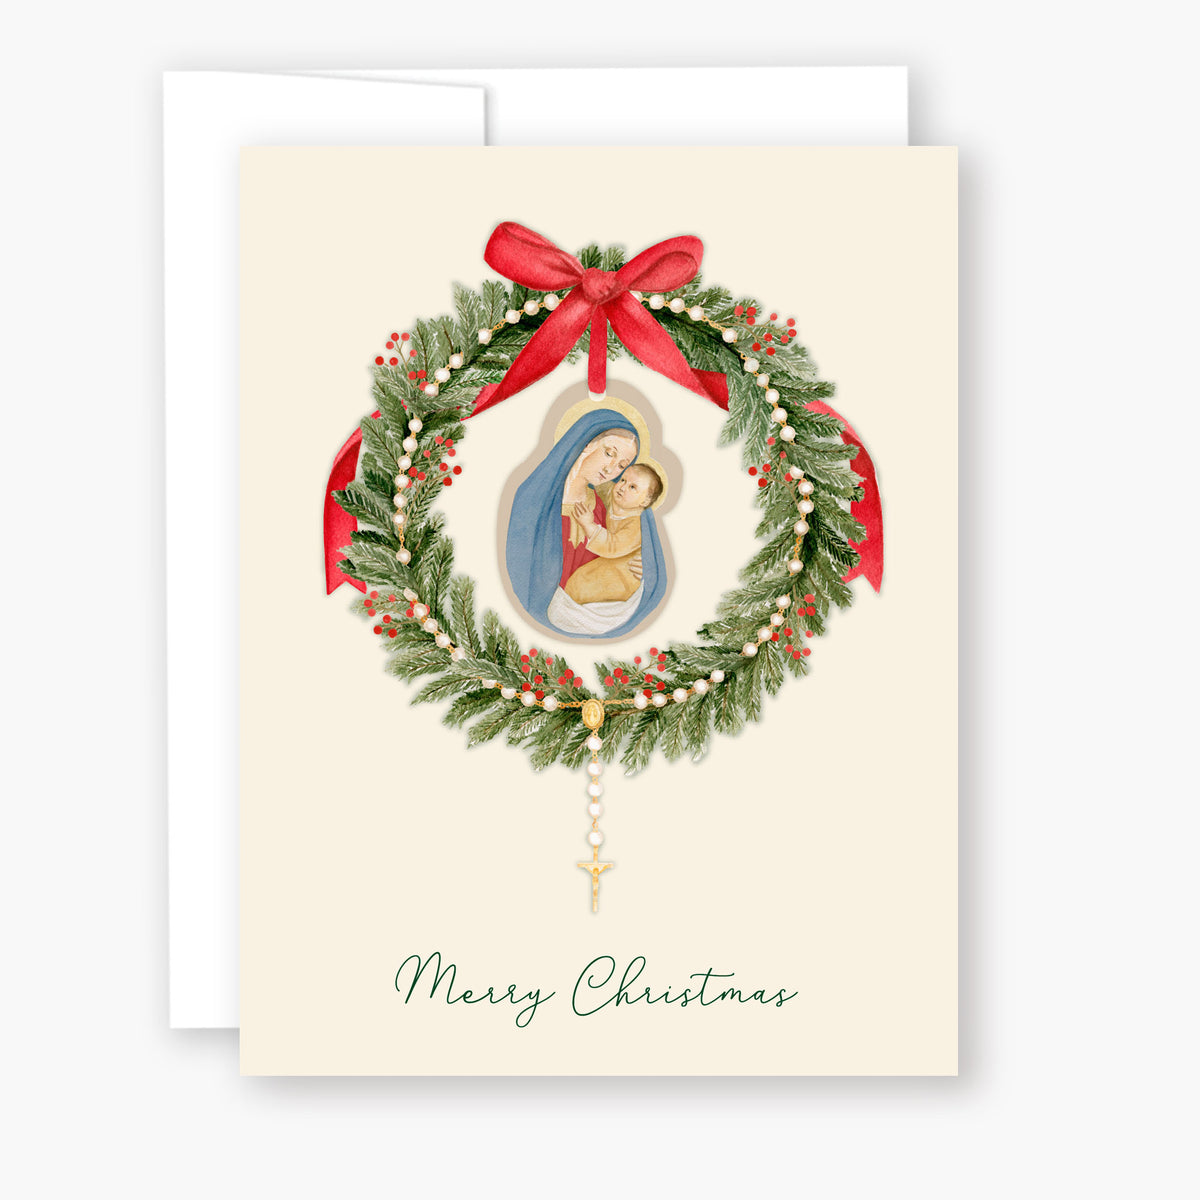 Christmas Card for Mom, Merry Christmas Mom Holiday Card